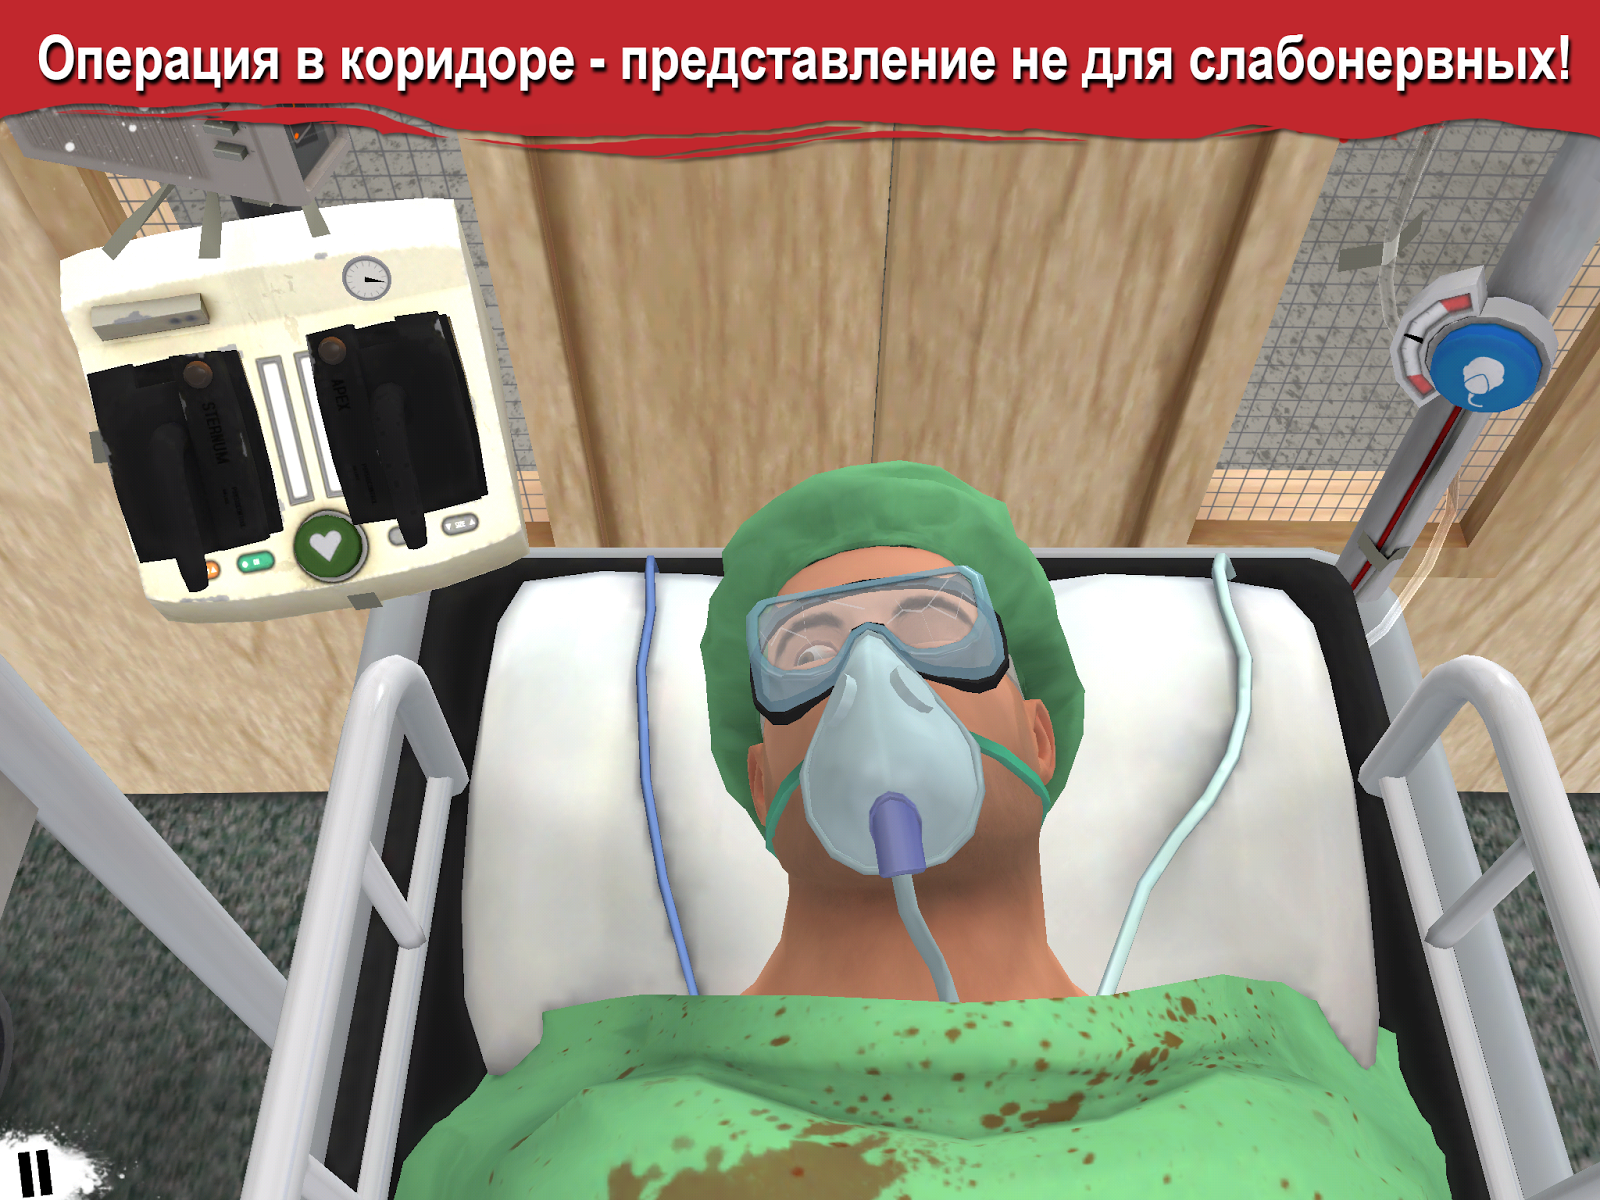 Скачать симулятор surgeon simulator 2018